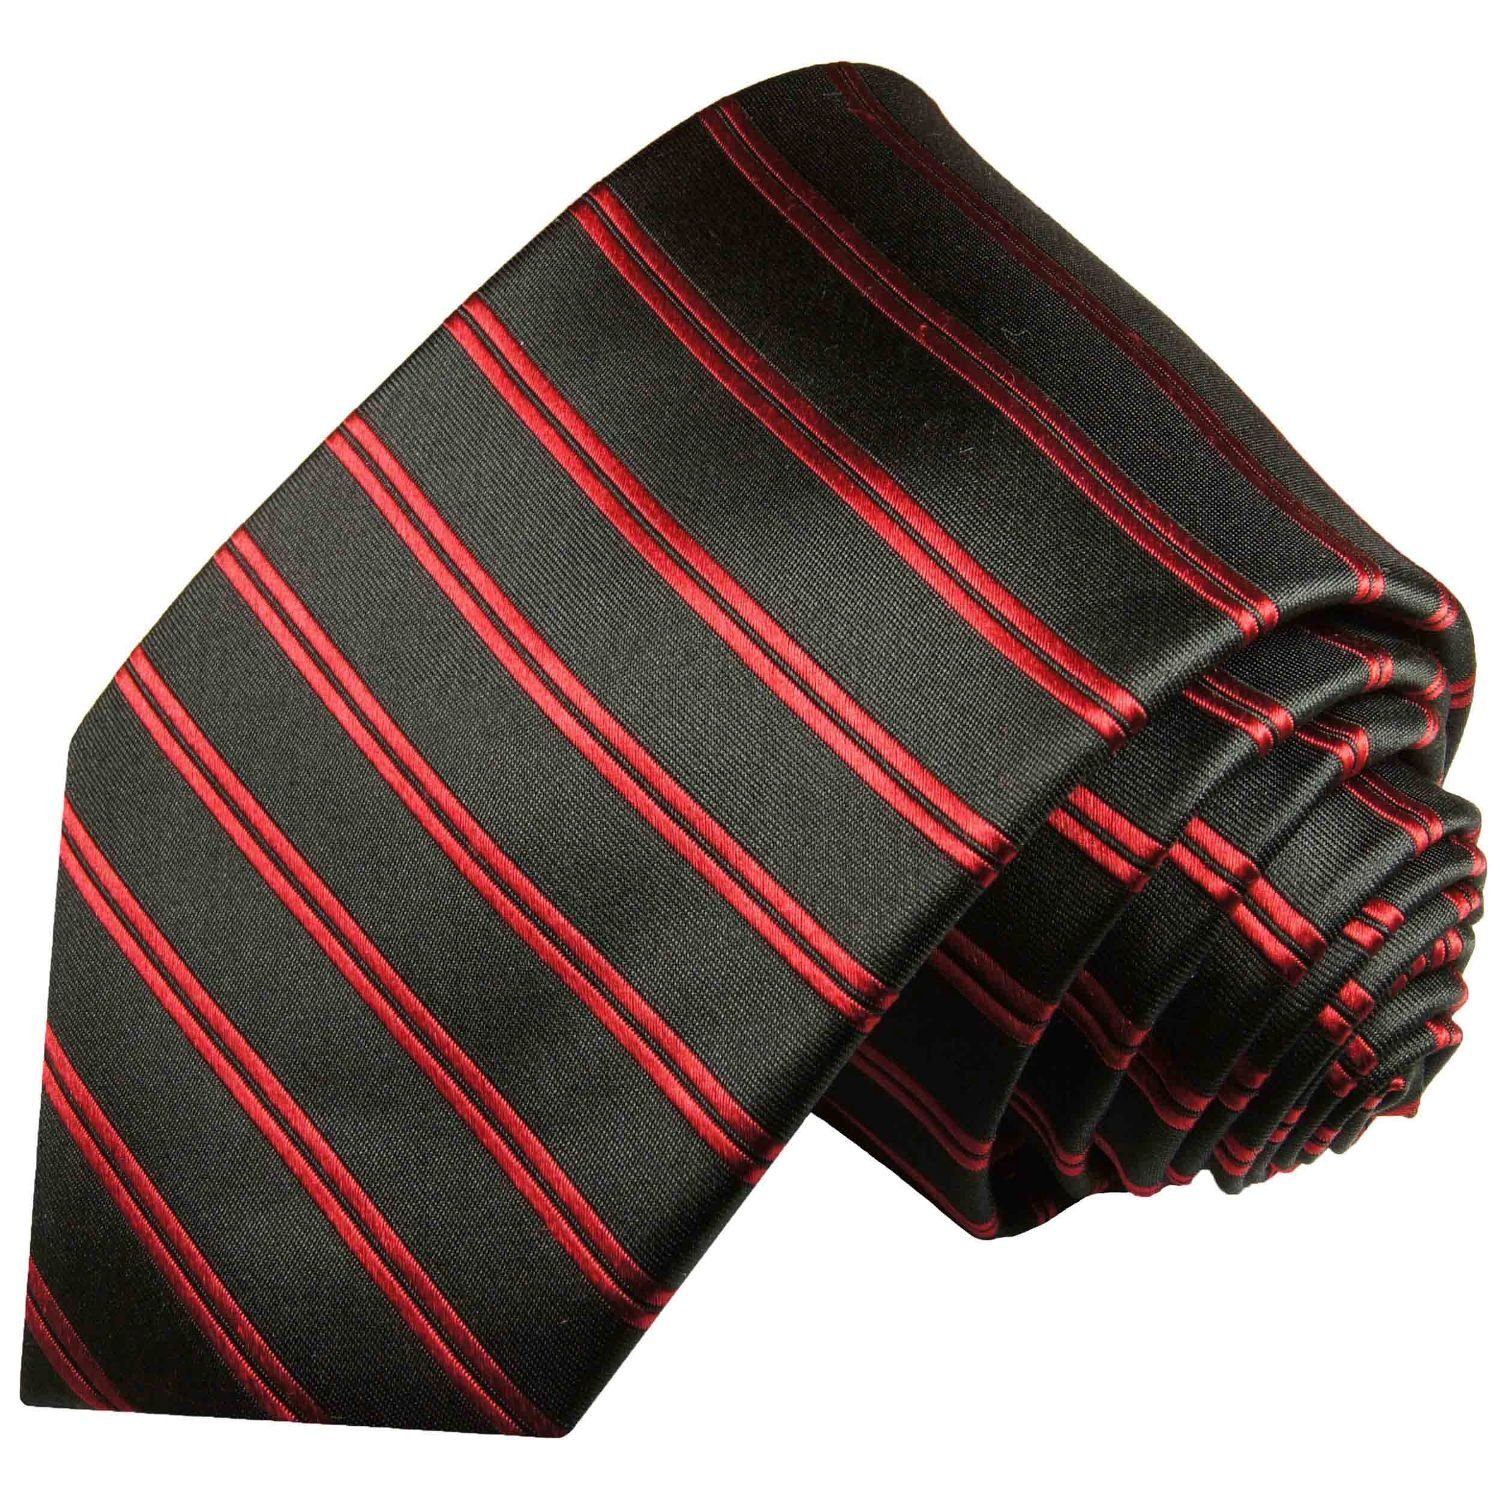 Paul Malone Krawatte Moderne Herren Seidenkrawatte gestreift 100% Seide Schmal (6cm), rot schwarz 400